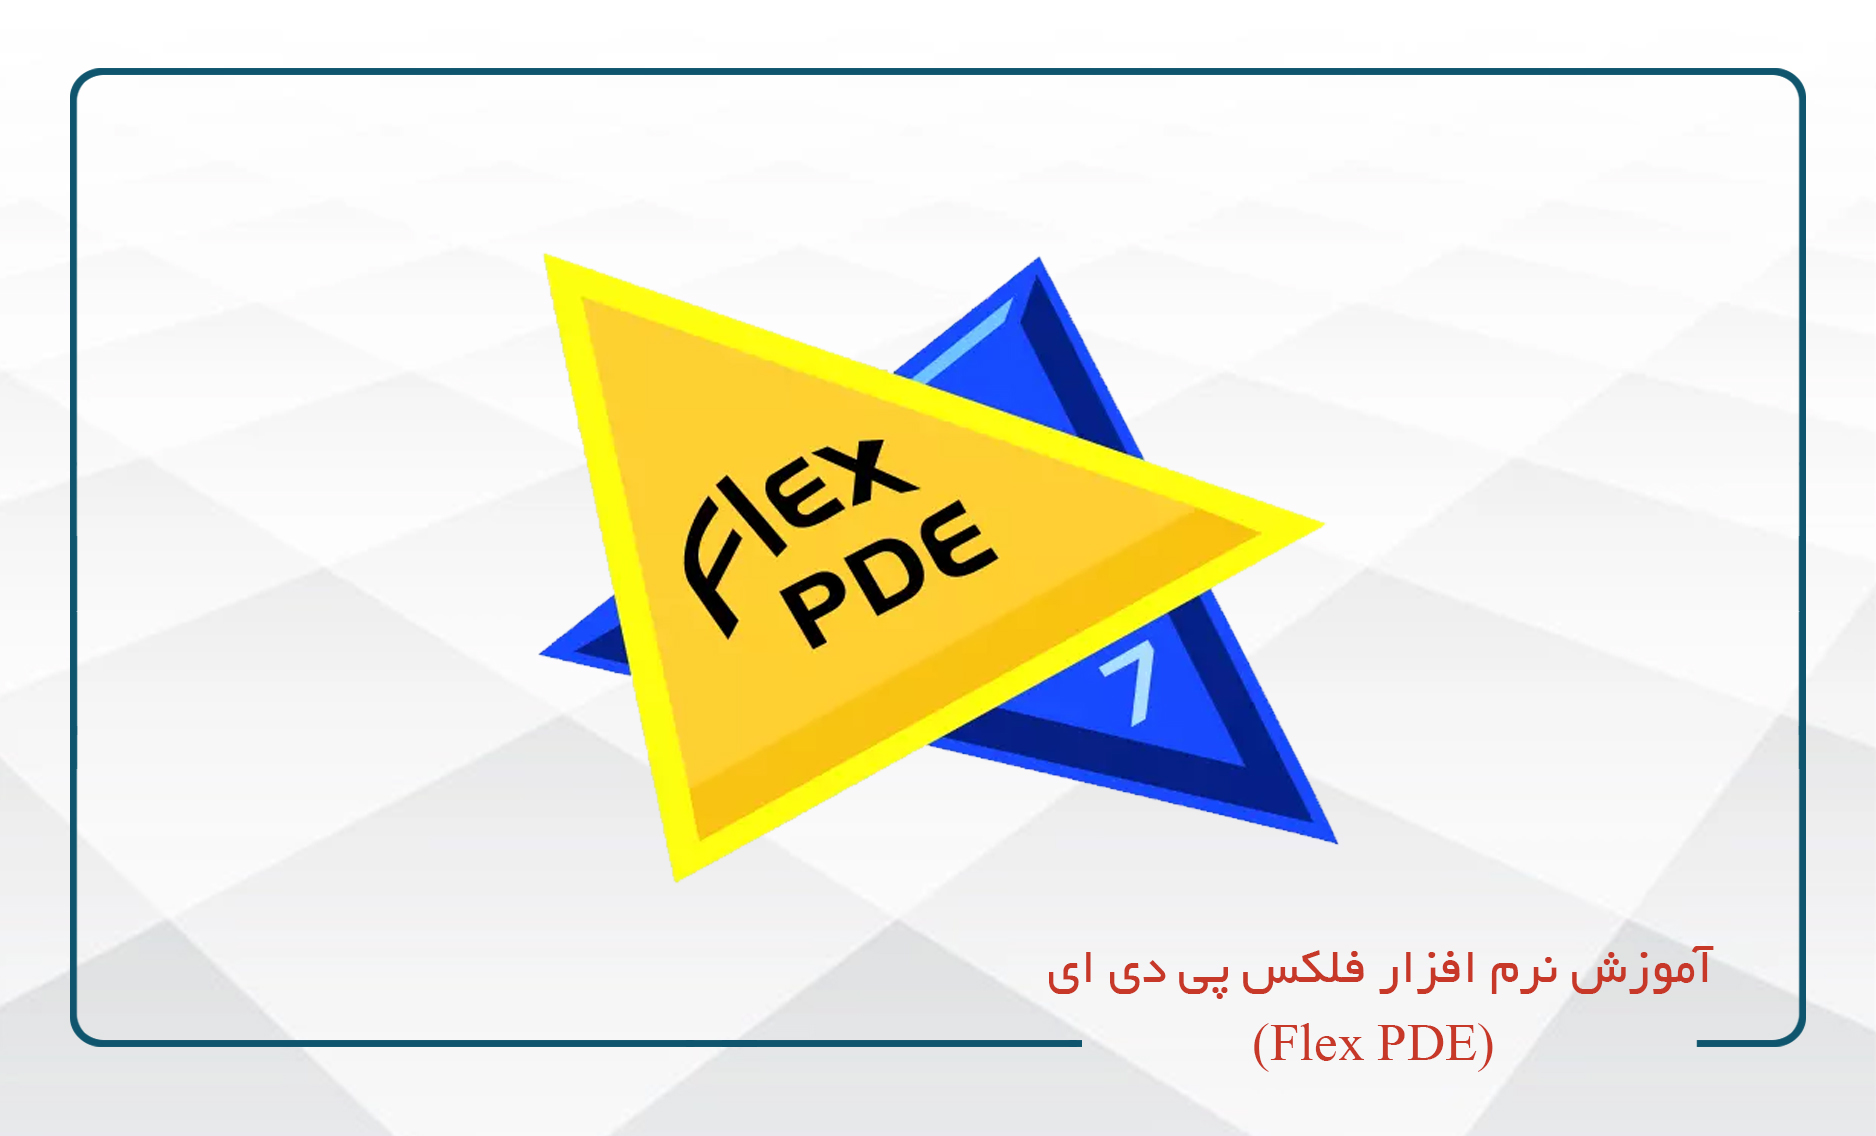 آموزش نرم افزار فلکس پی دی ای (Flex PDE)